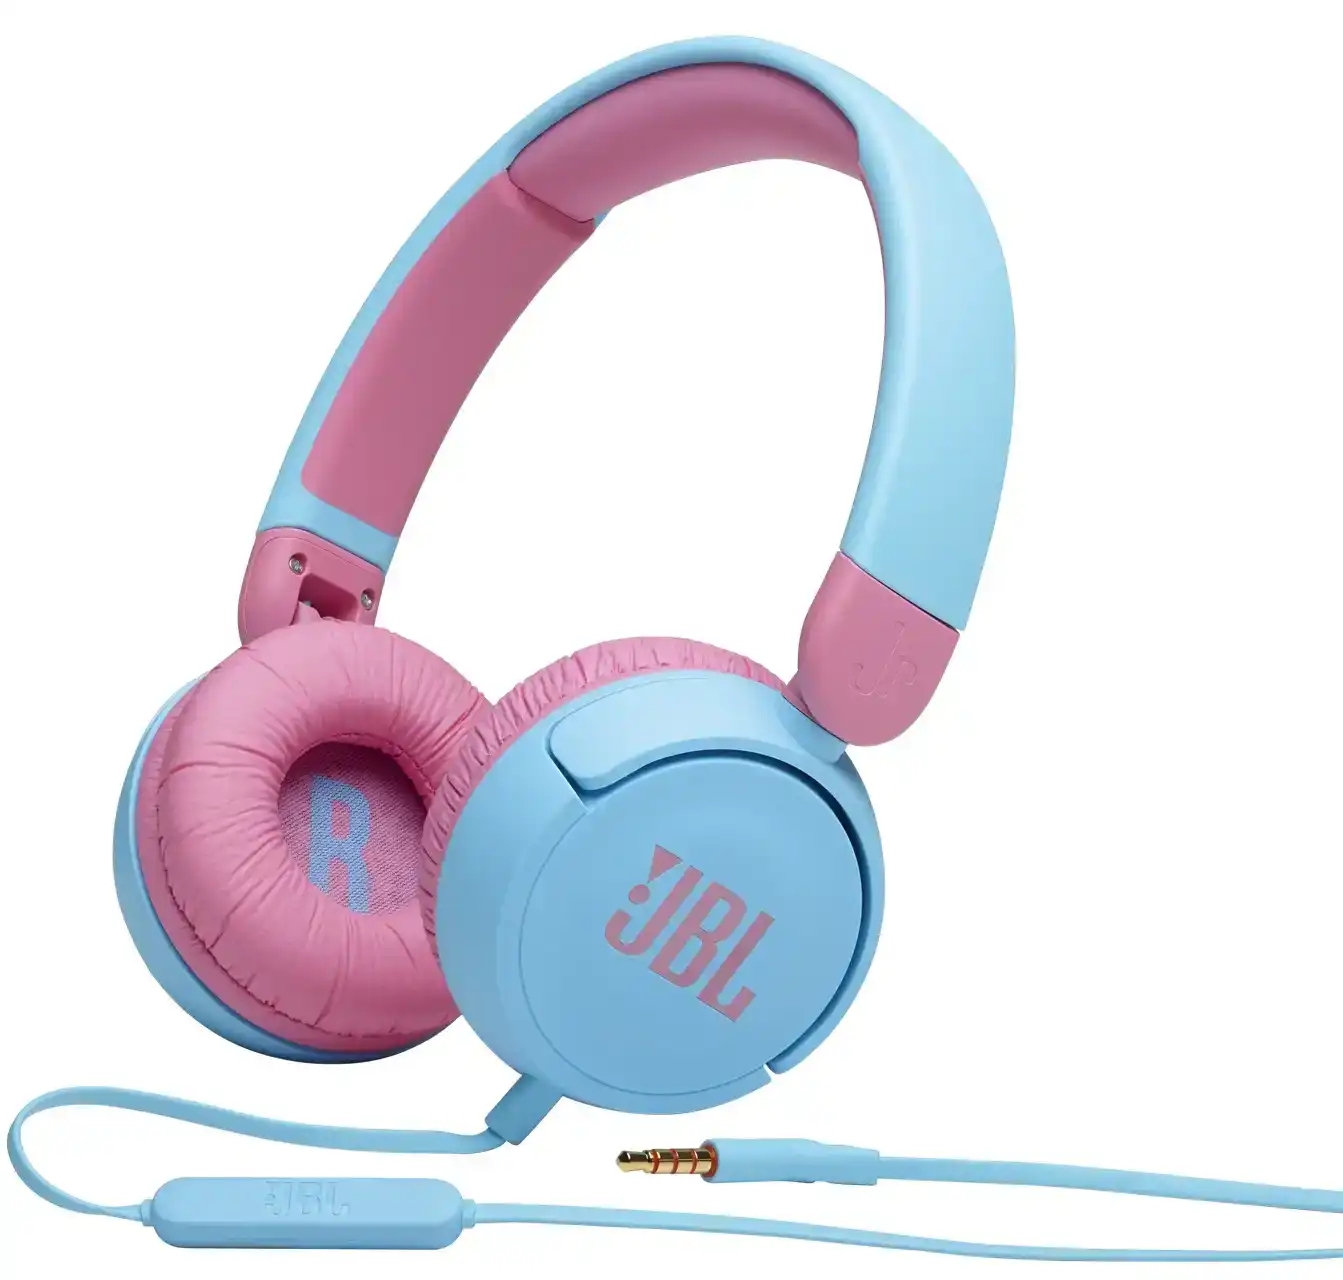 draadloze luidspreker-Draadloze hoofdtelefoon-bluetooth luidspreker-bluetooth hoofdtelefoon